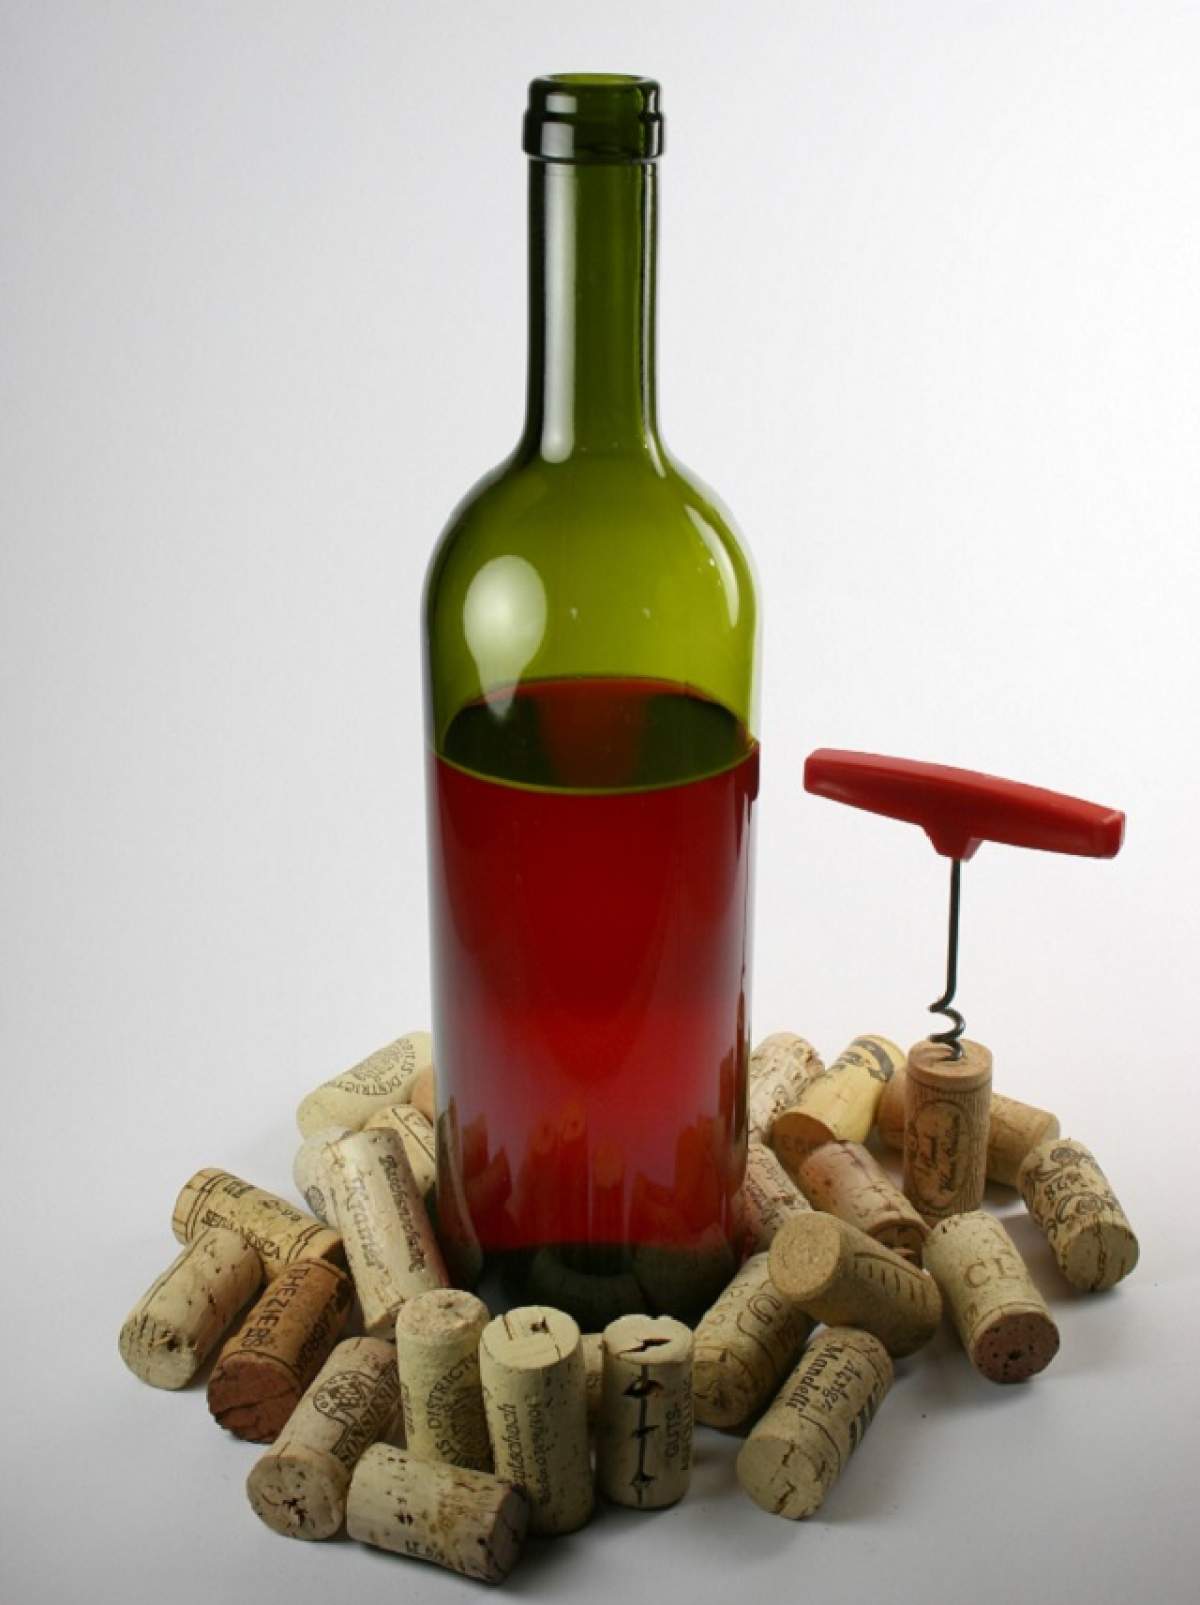 ÎNTREBAREA ZILEI - DUMINICĂ: Cum deschizi o sticlă de vin când nu ai un tirbușon? 8 trucuri care te vor face să te întrebi de ce nu le-ai încercat până acum